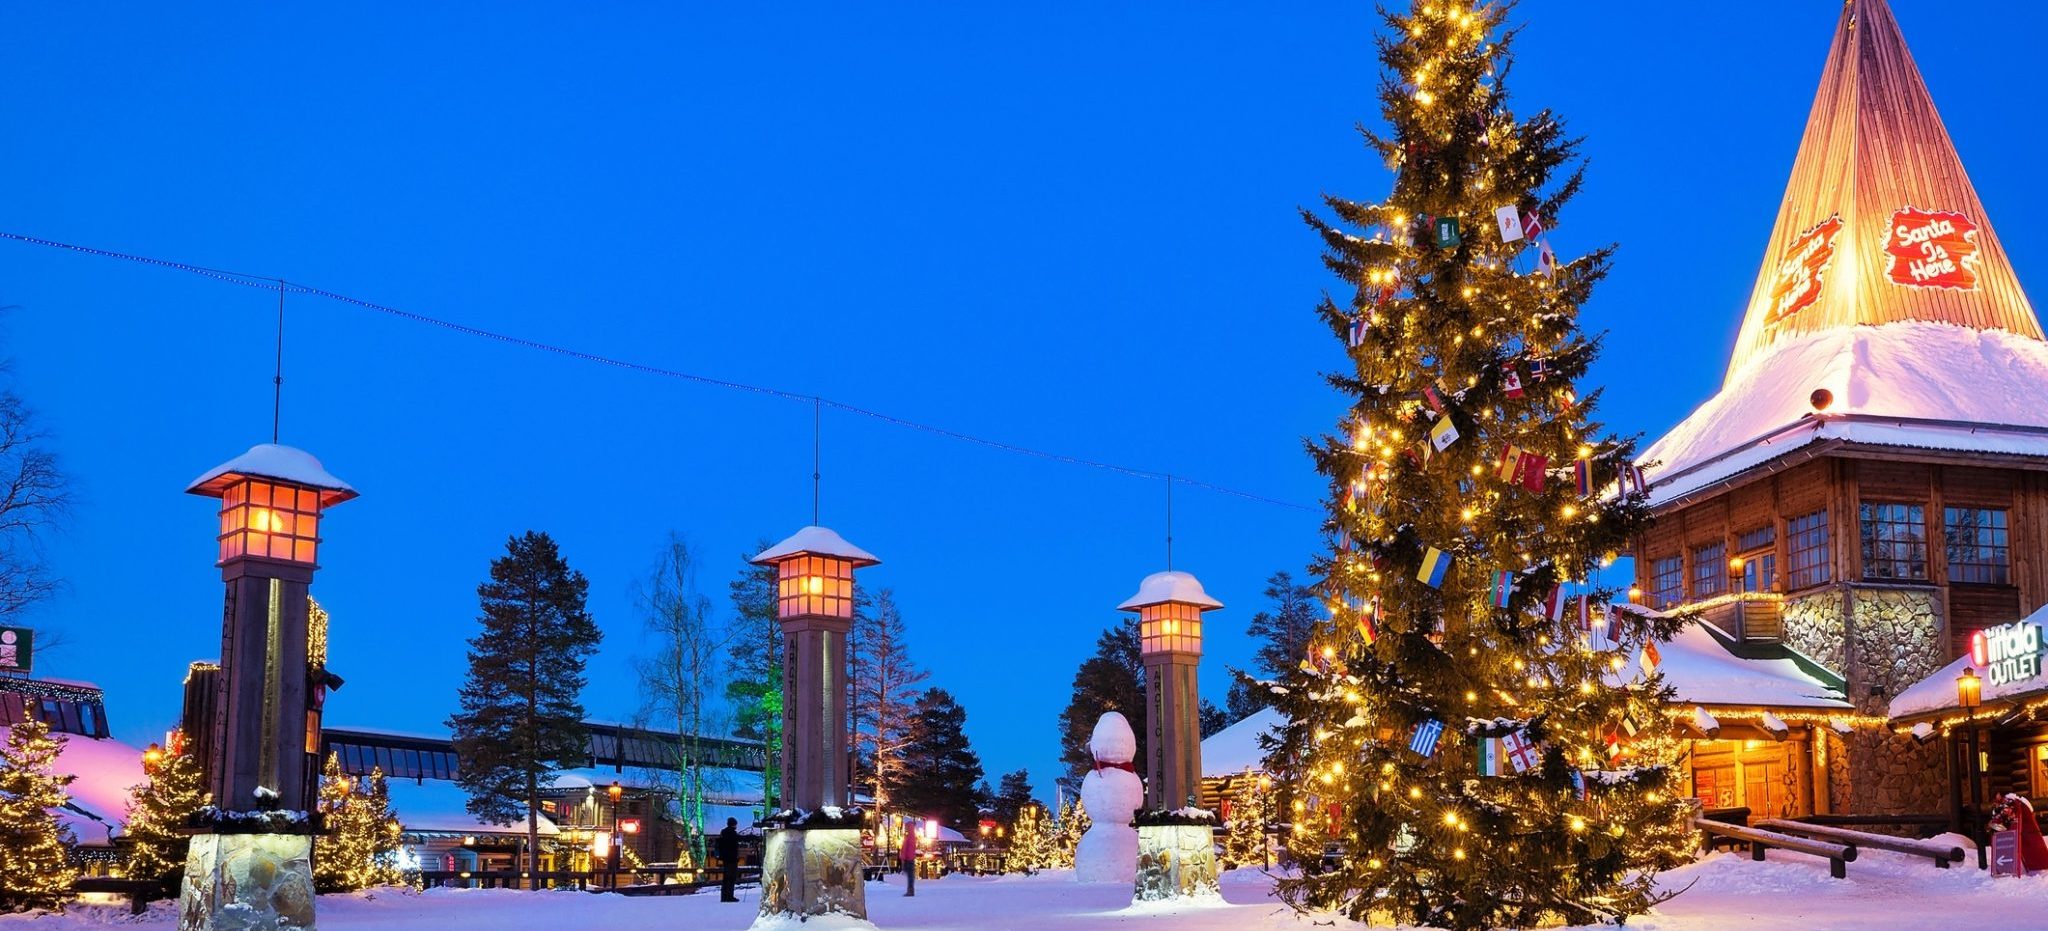 Santa Claus Village in Finland.